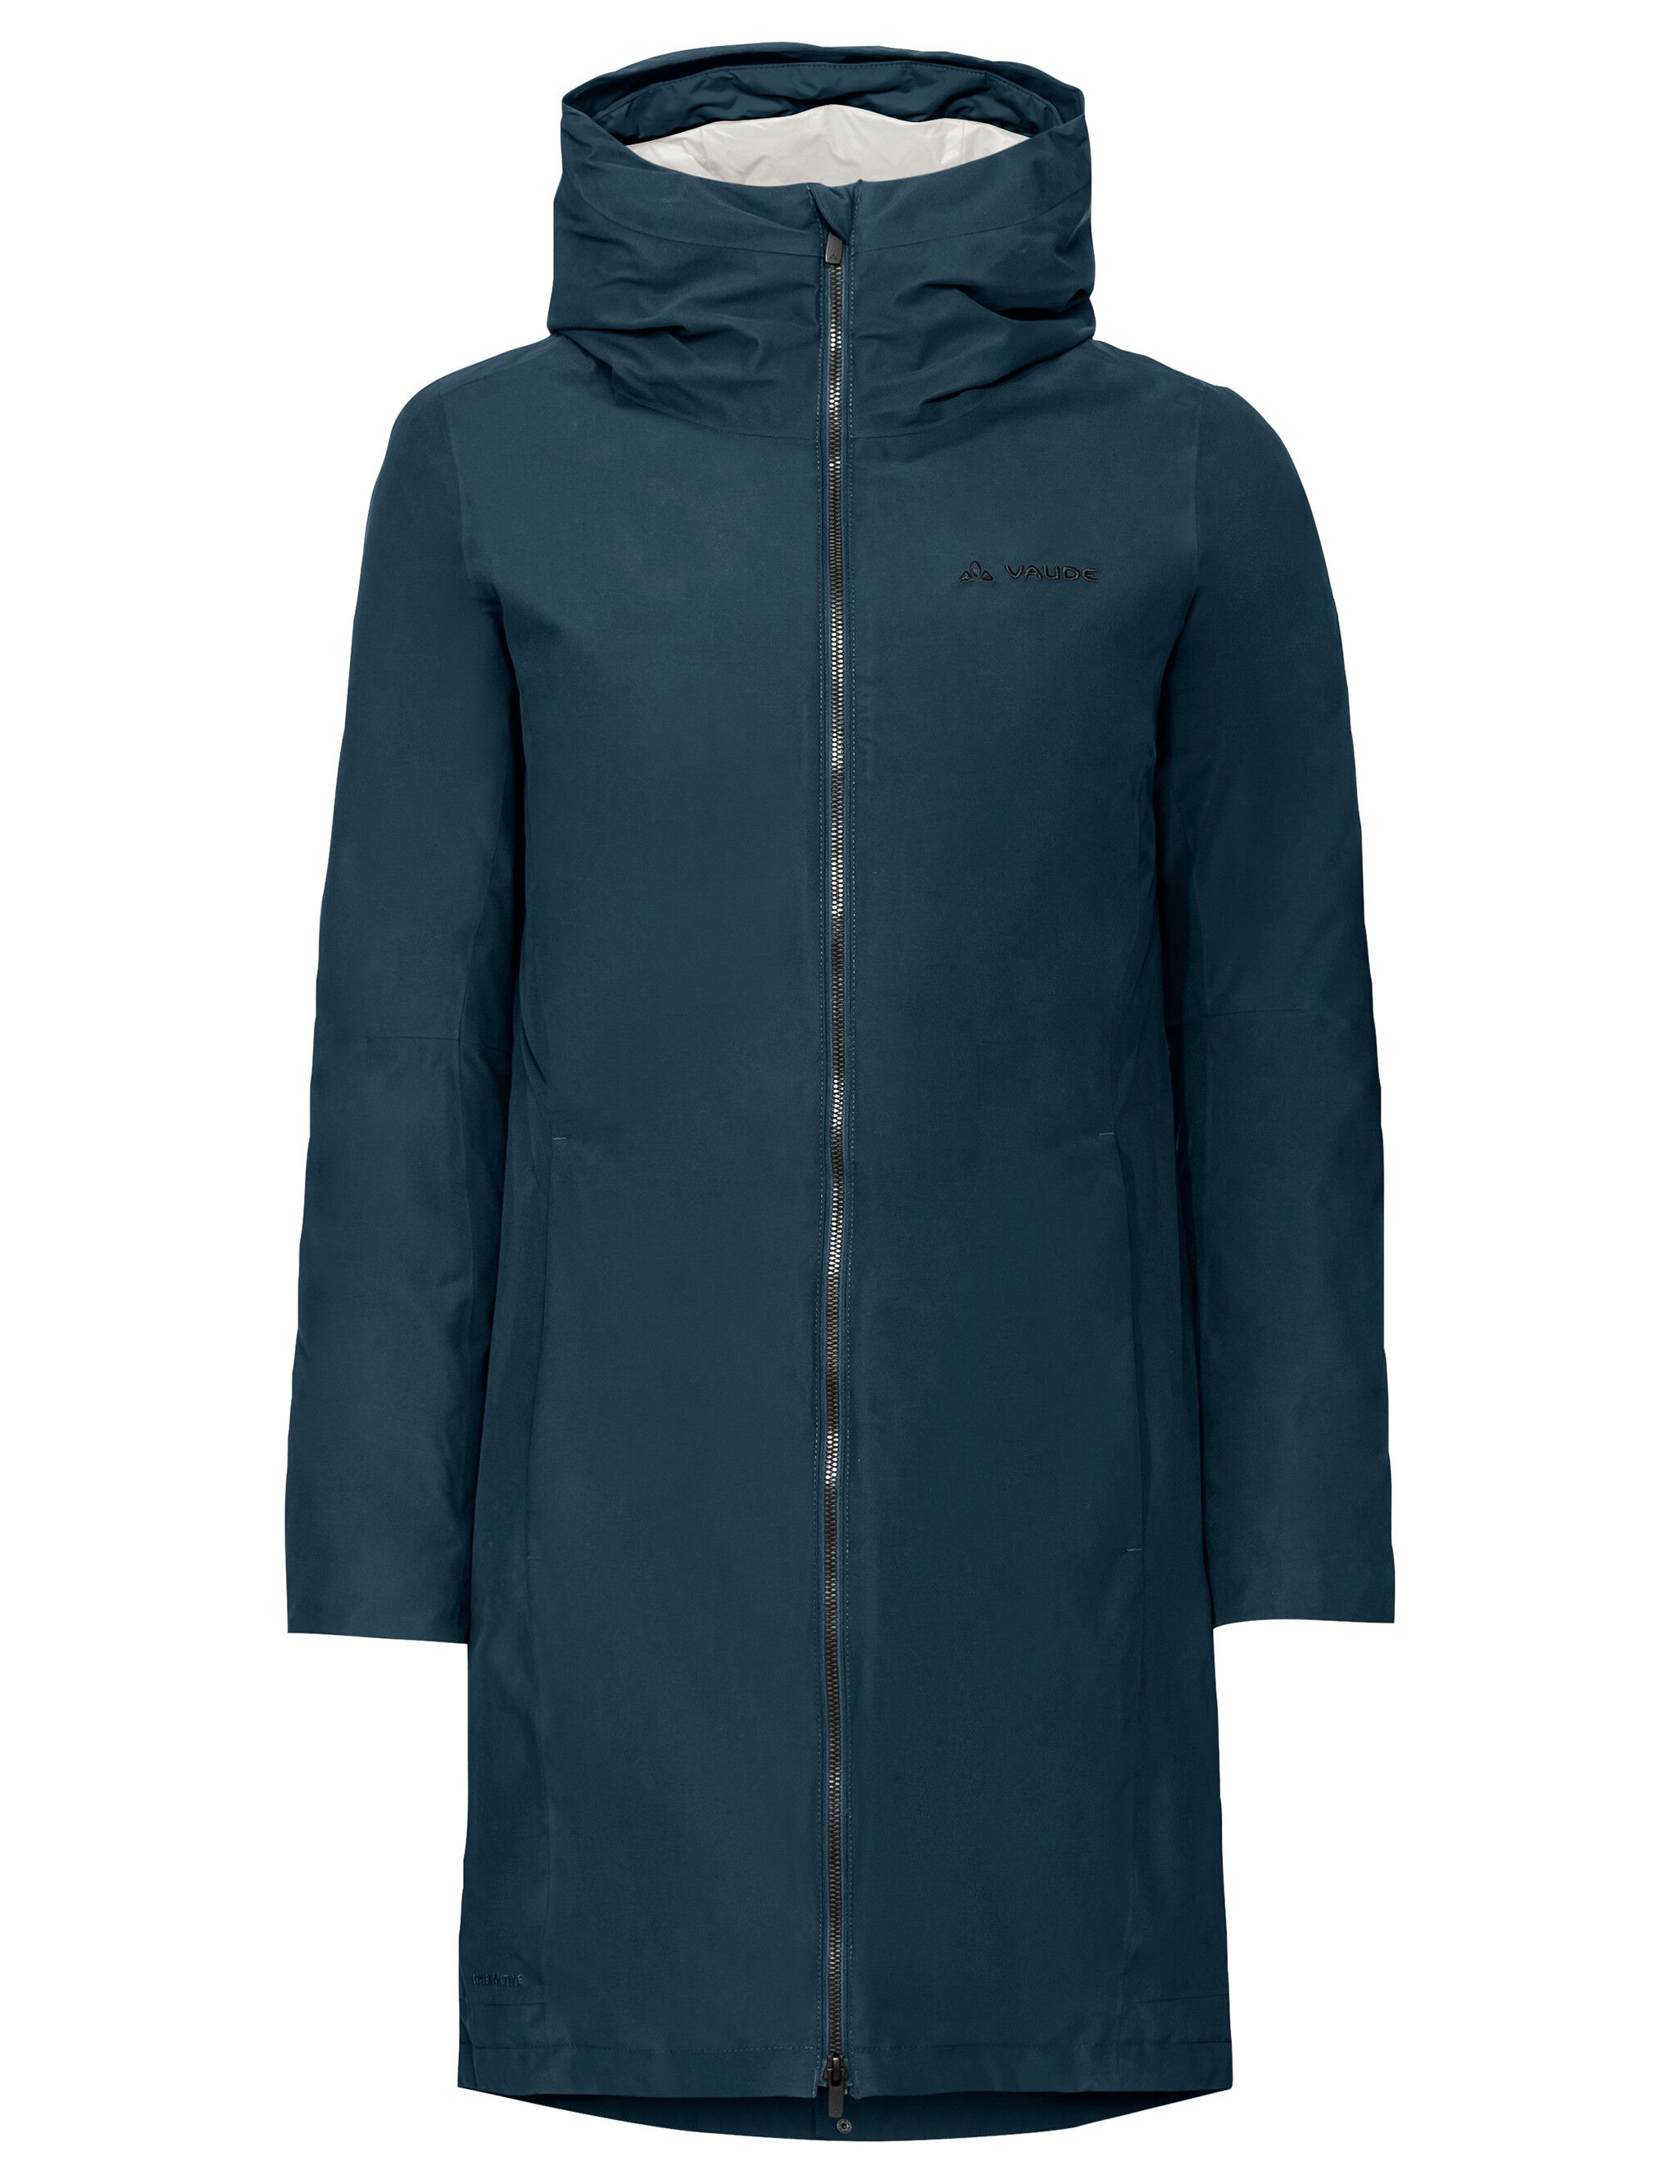 Vaude Annecy 3in1 Coat III - 3-in-1 jacket - Women's